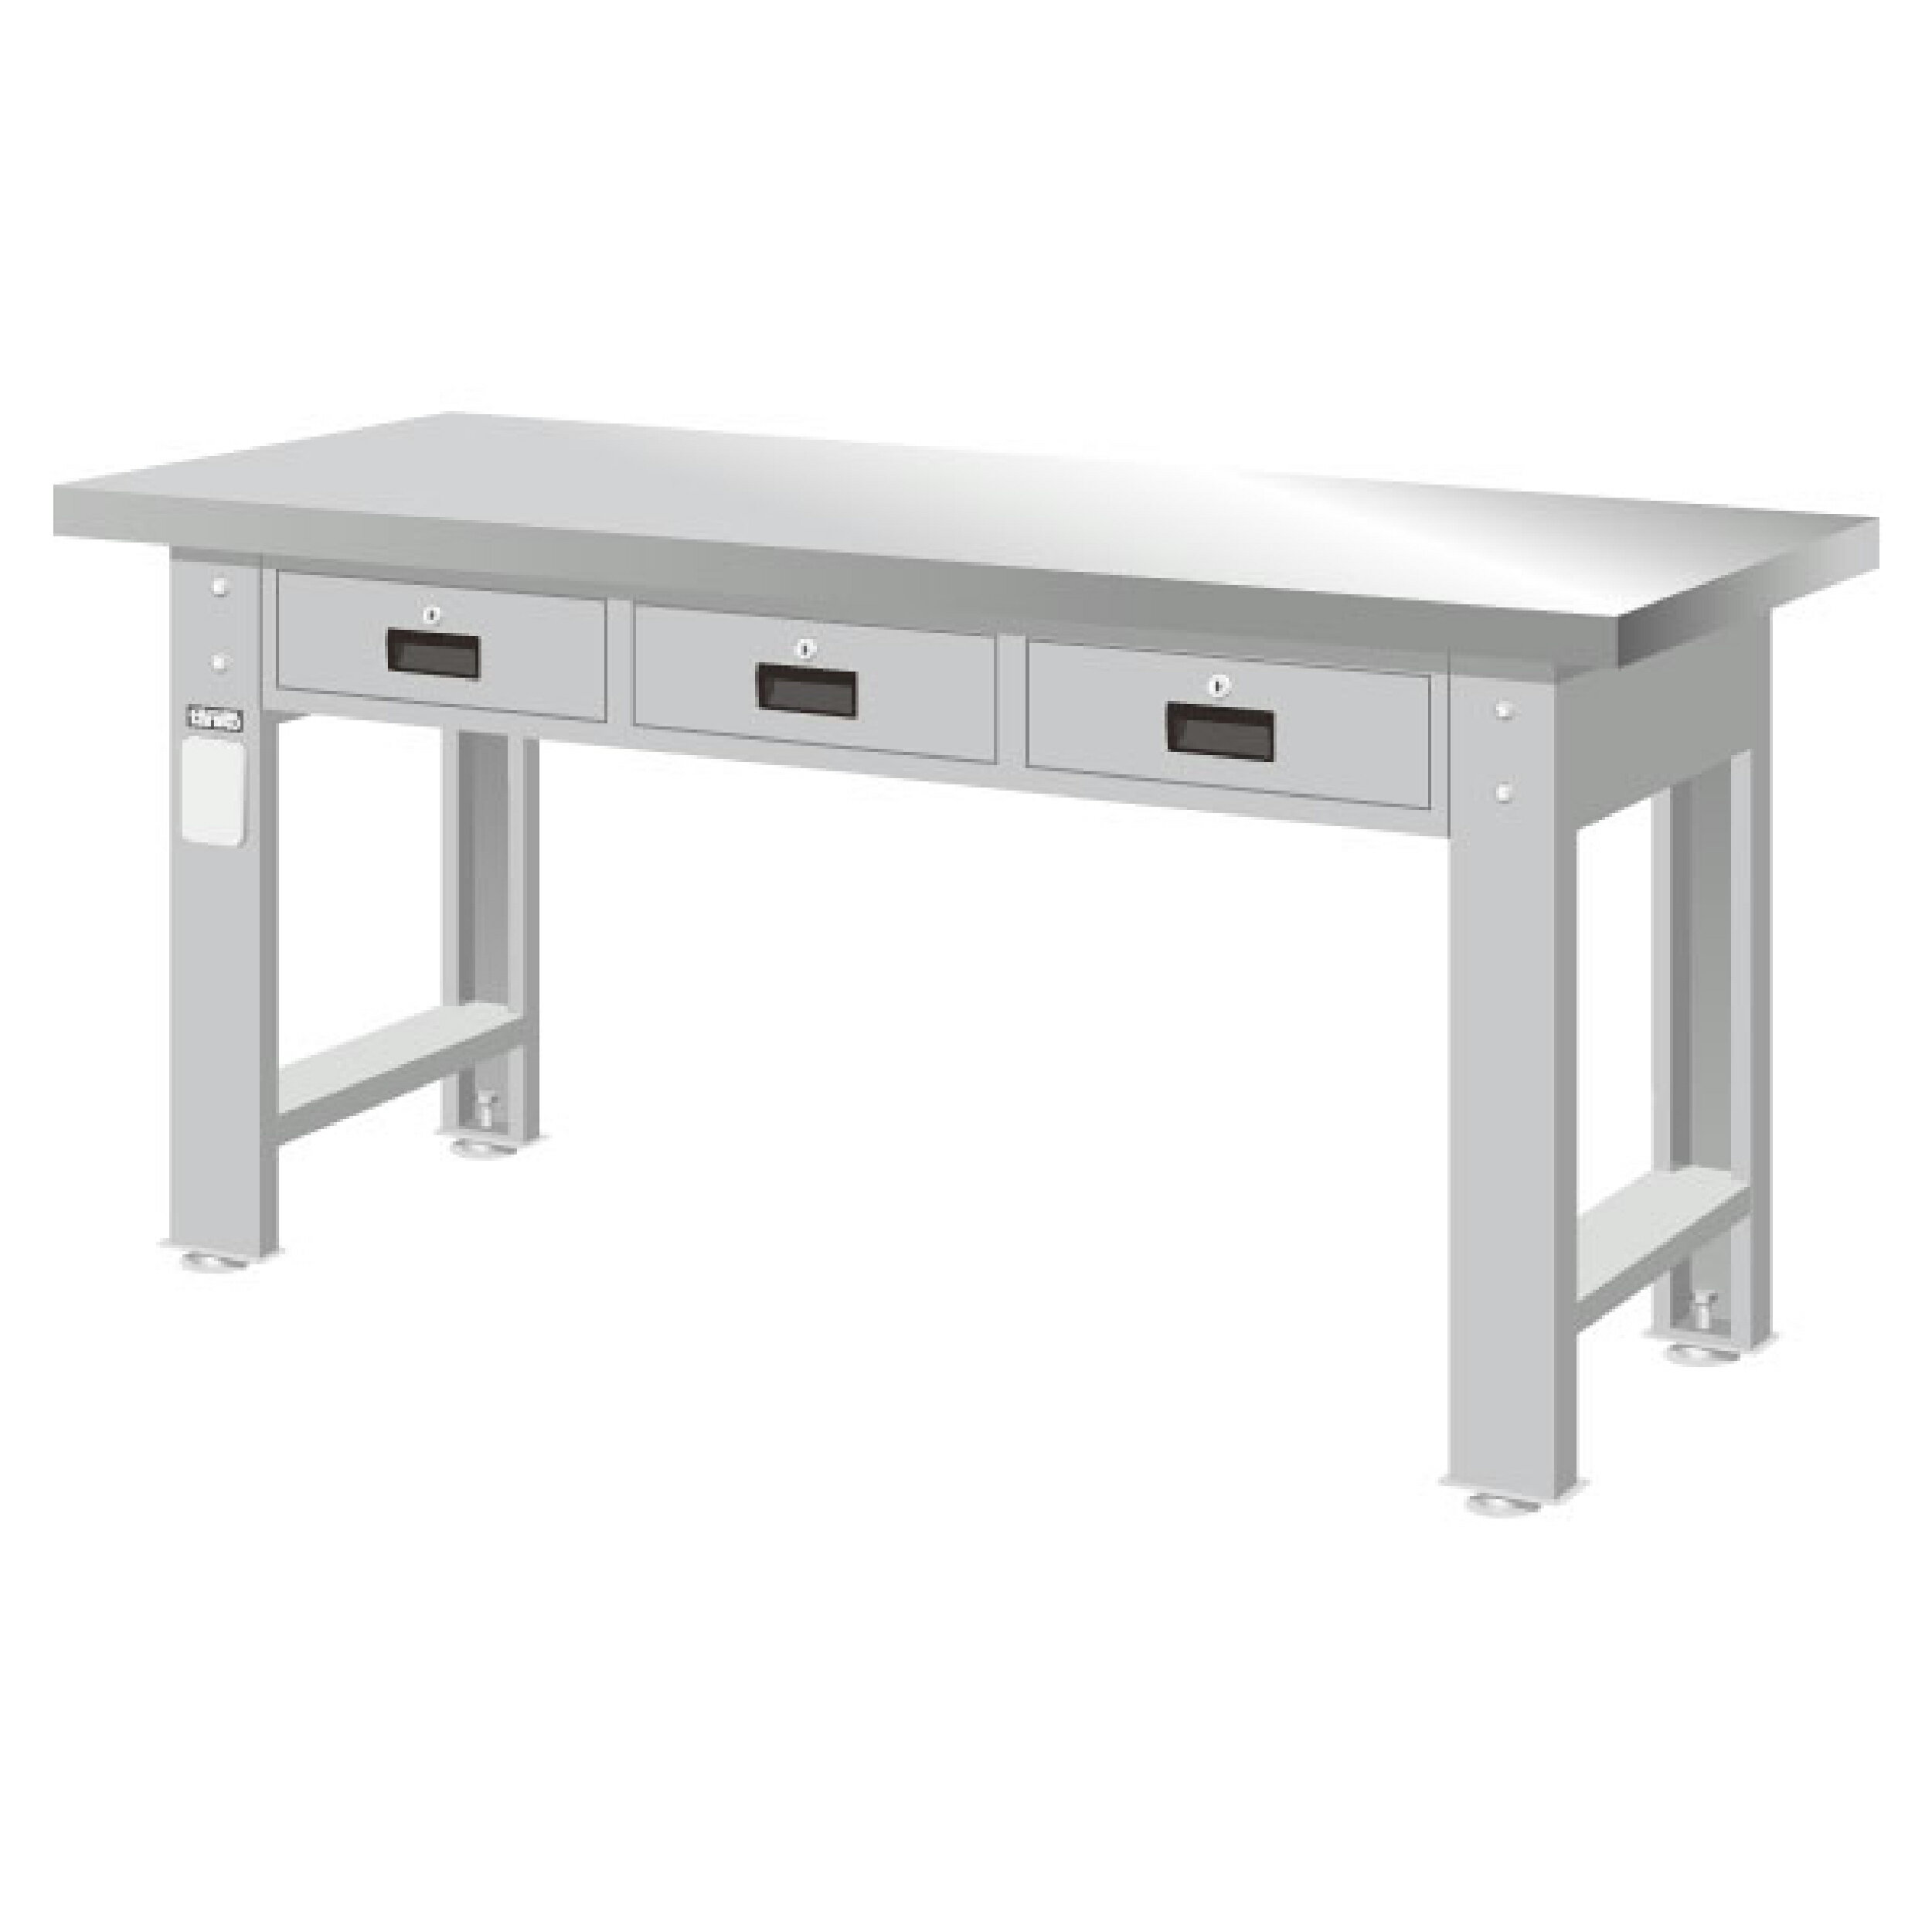 TANKO 重量型工作桌 不銹鋼桌板 WAT-5203S (橫三屜型)